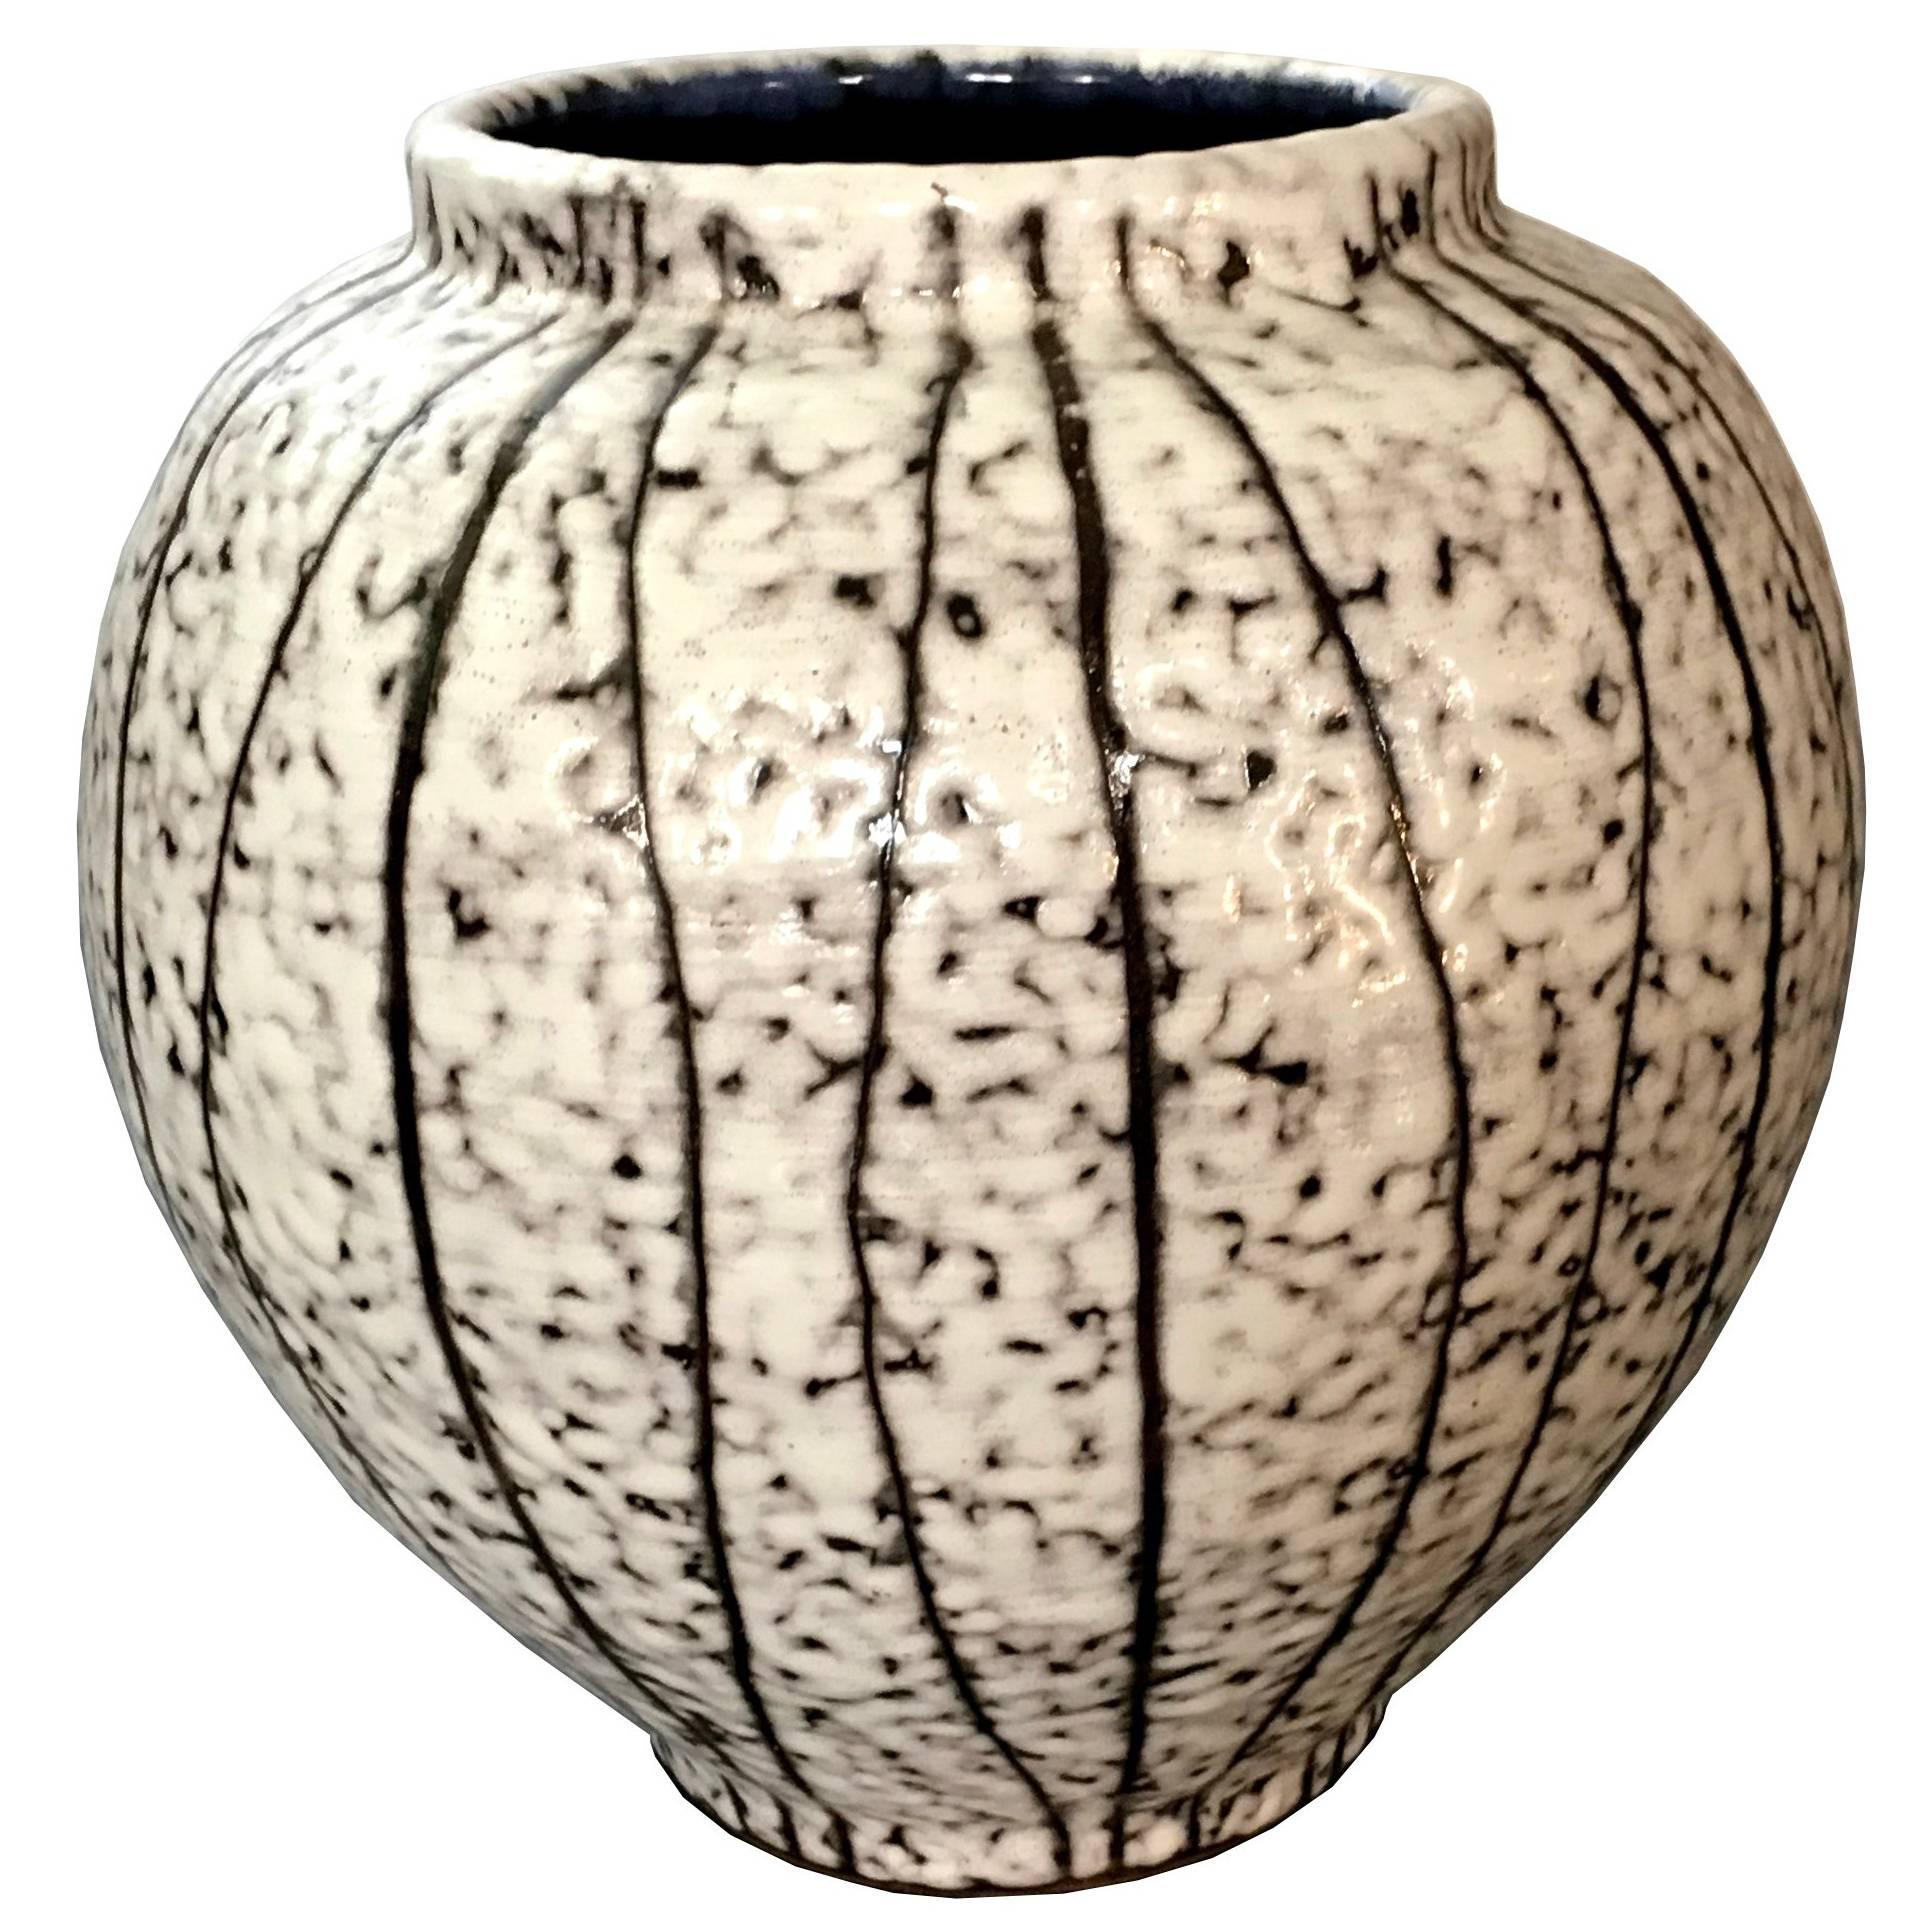 Post-Modern Scandinavian Design White Glazed Ceramic Vase